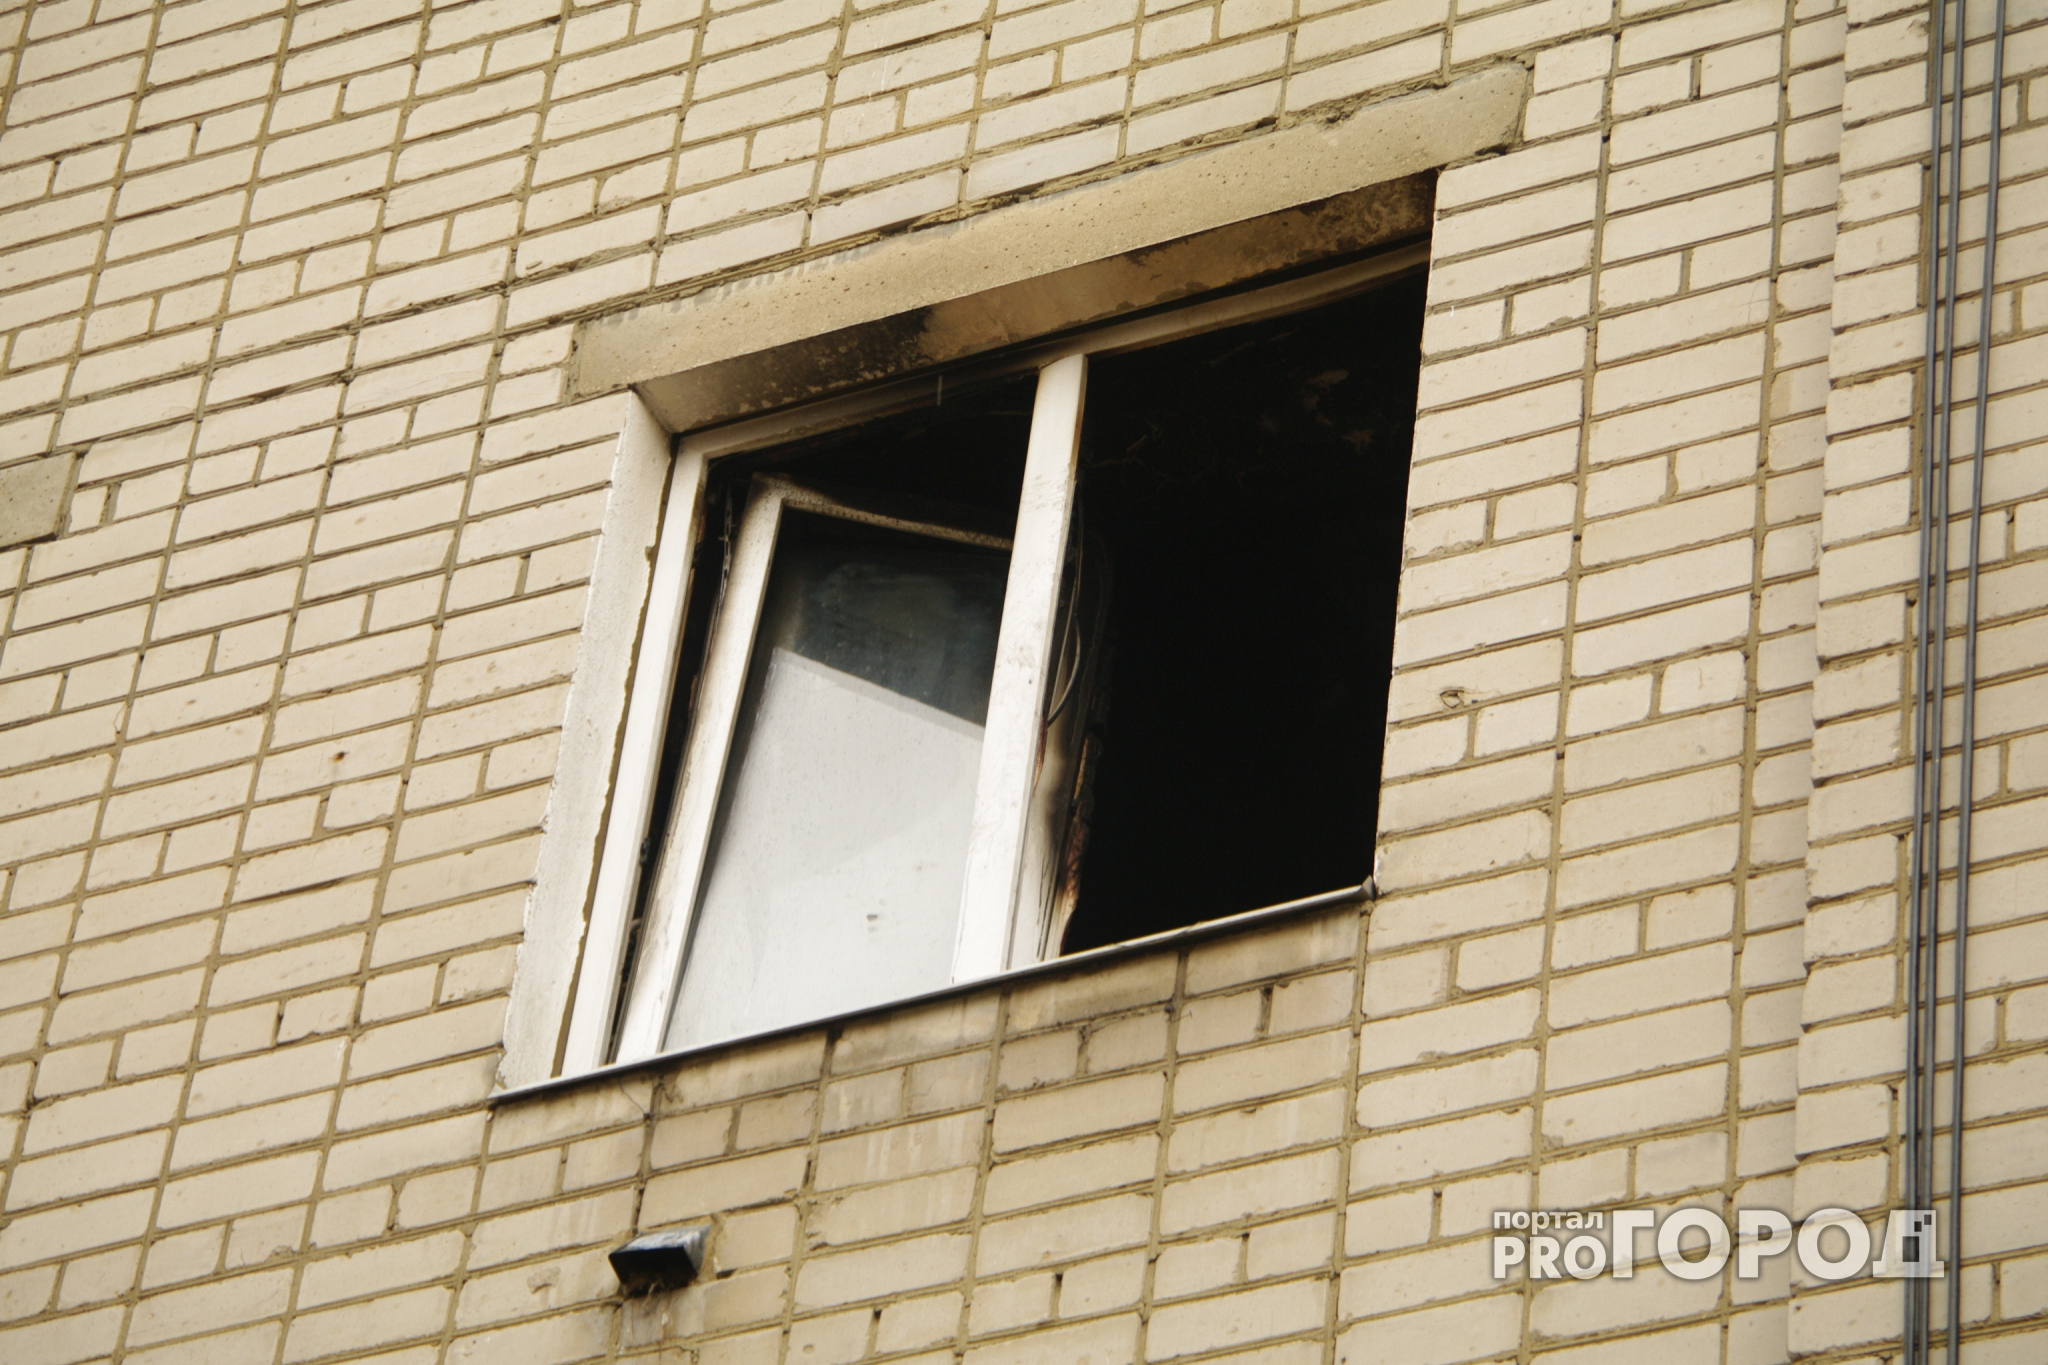 Пожар в пятиэтажке на улице Зубковой - имеются пострадавшие